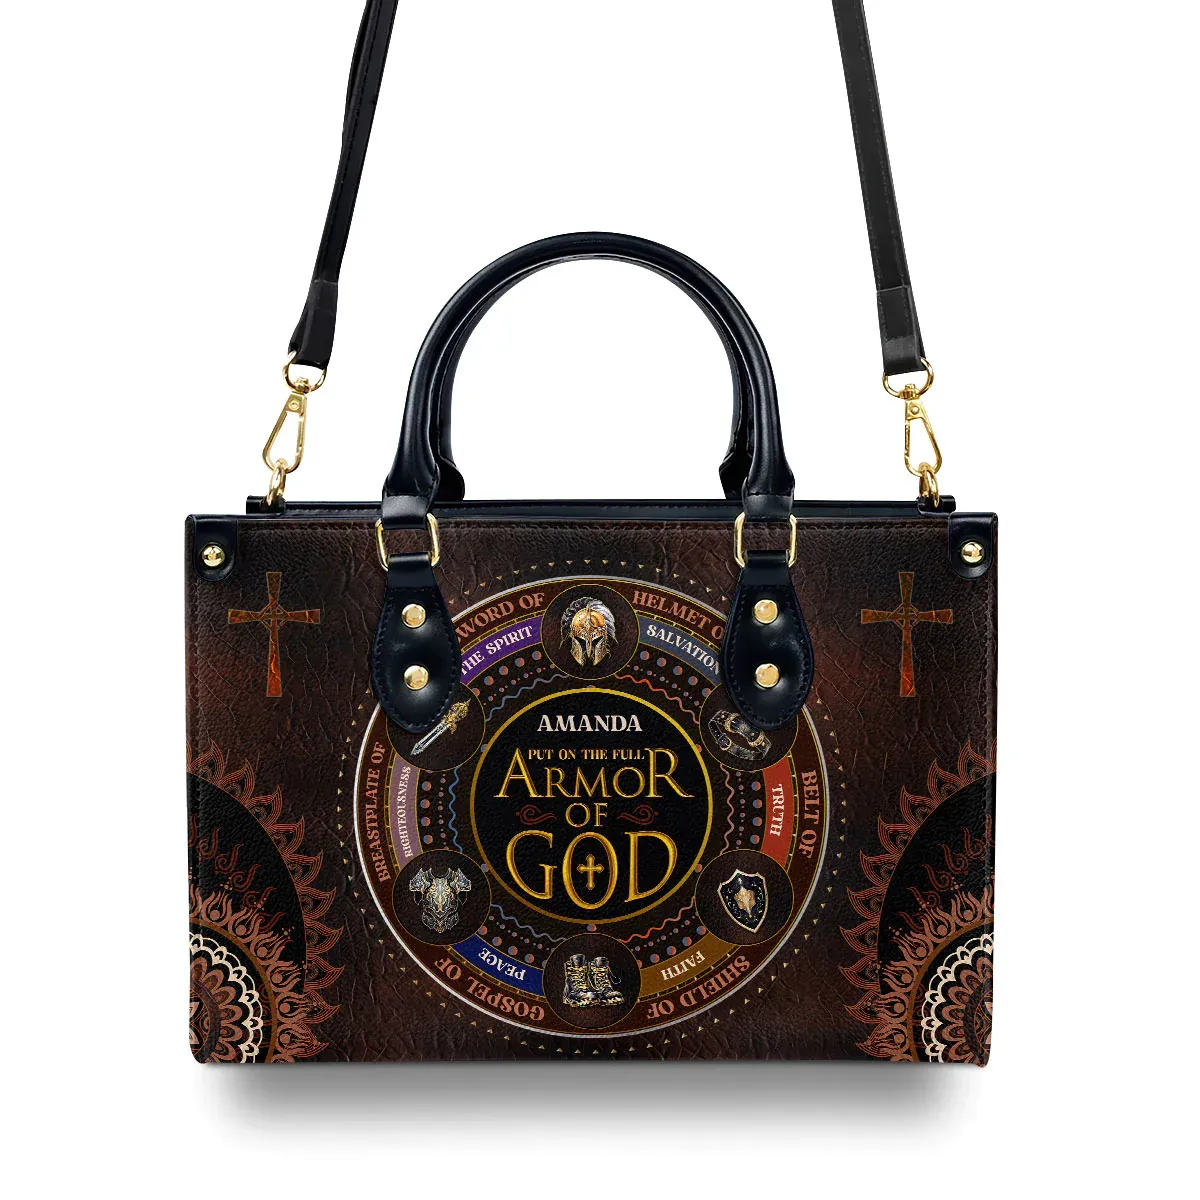 Cheap Handbag Bags For Women Religious Gift For Worship Friends Armor Of God Print Custom Handbags For Women Free Shipping